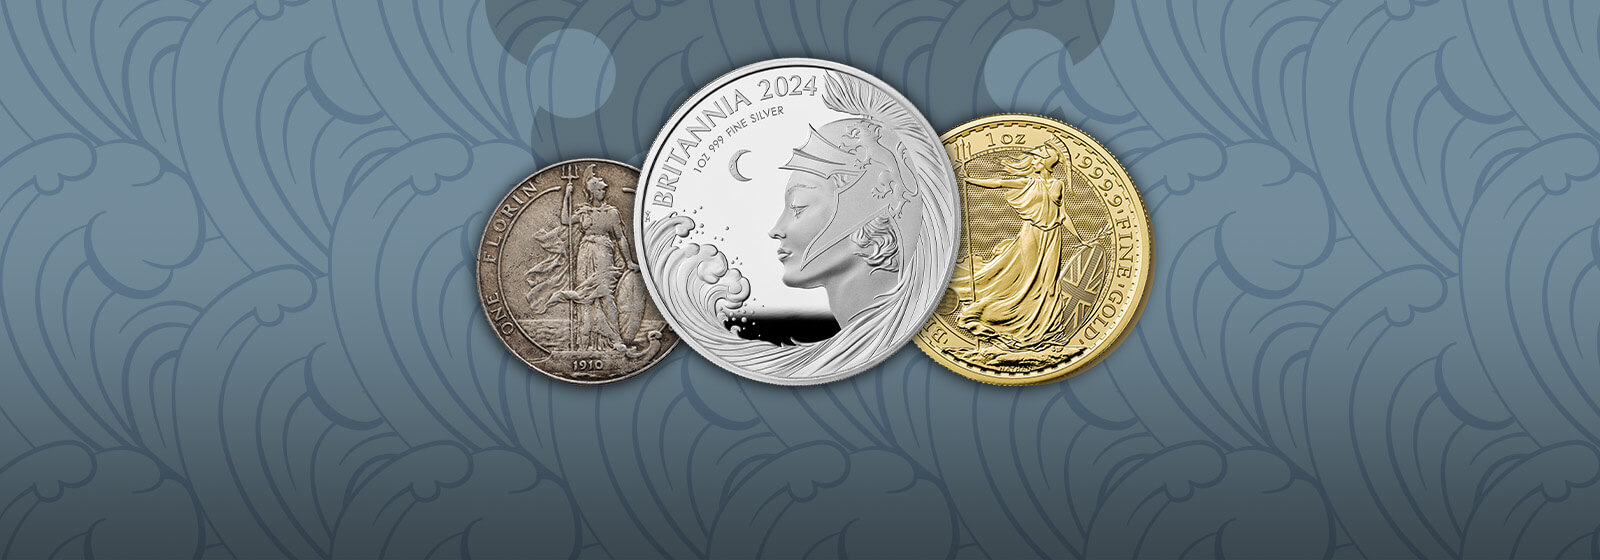 Britannia Coins and Bars